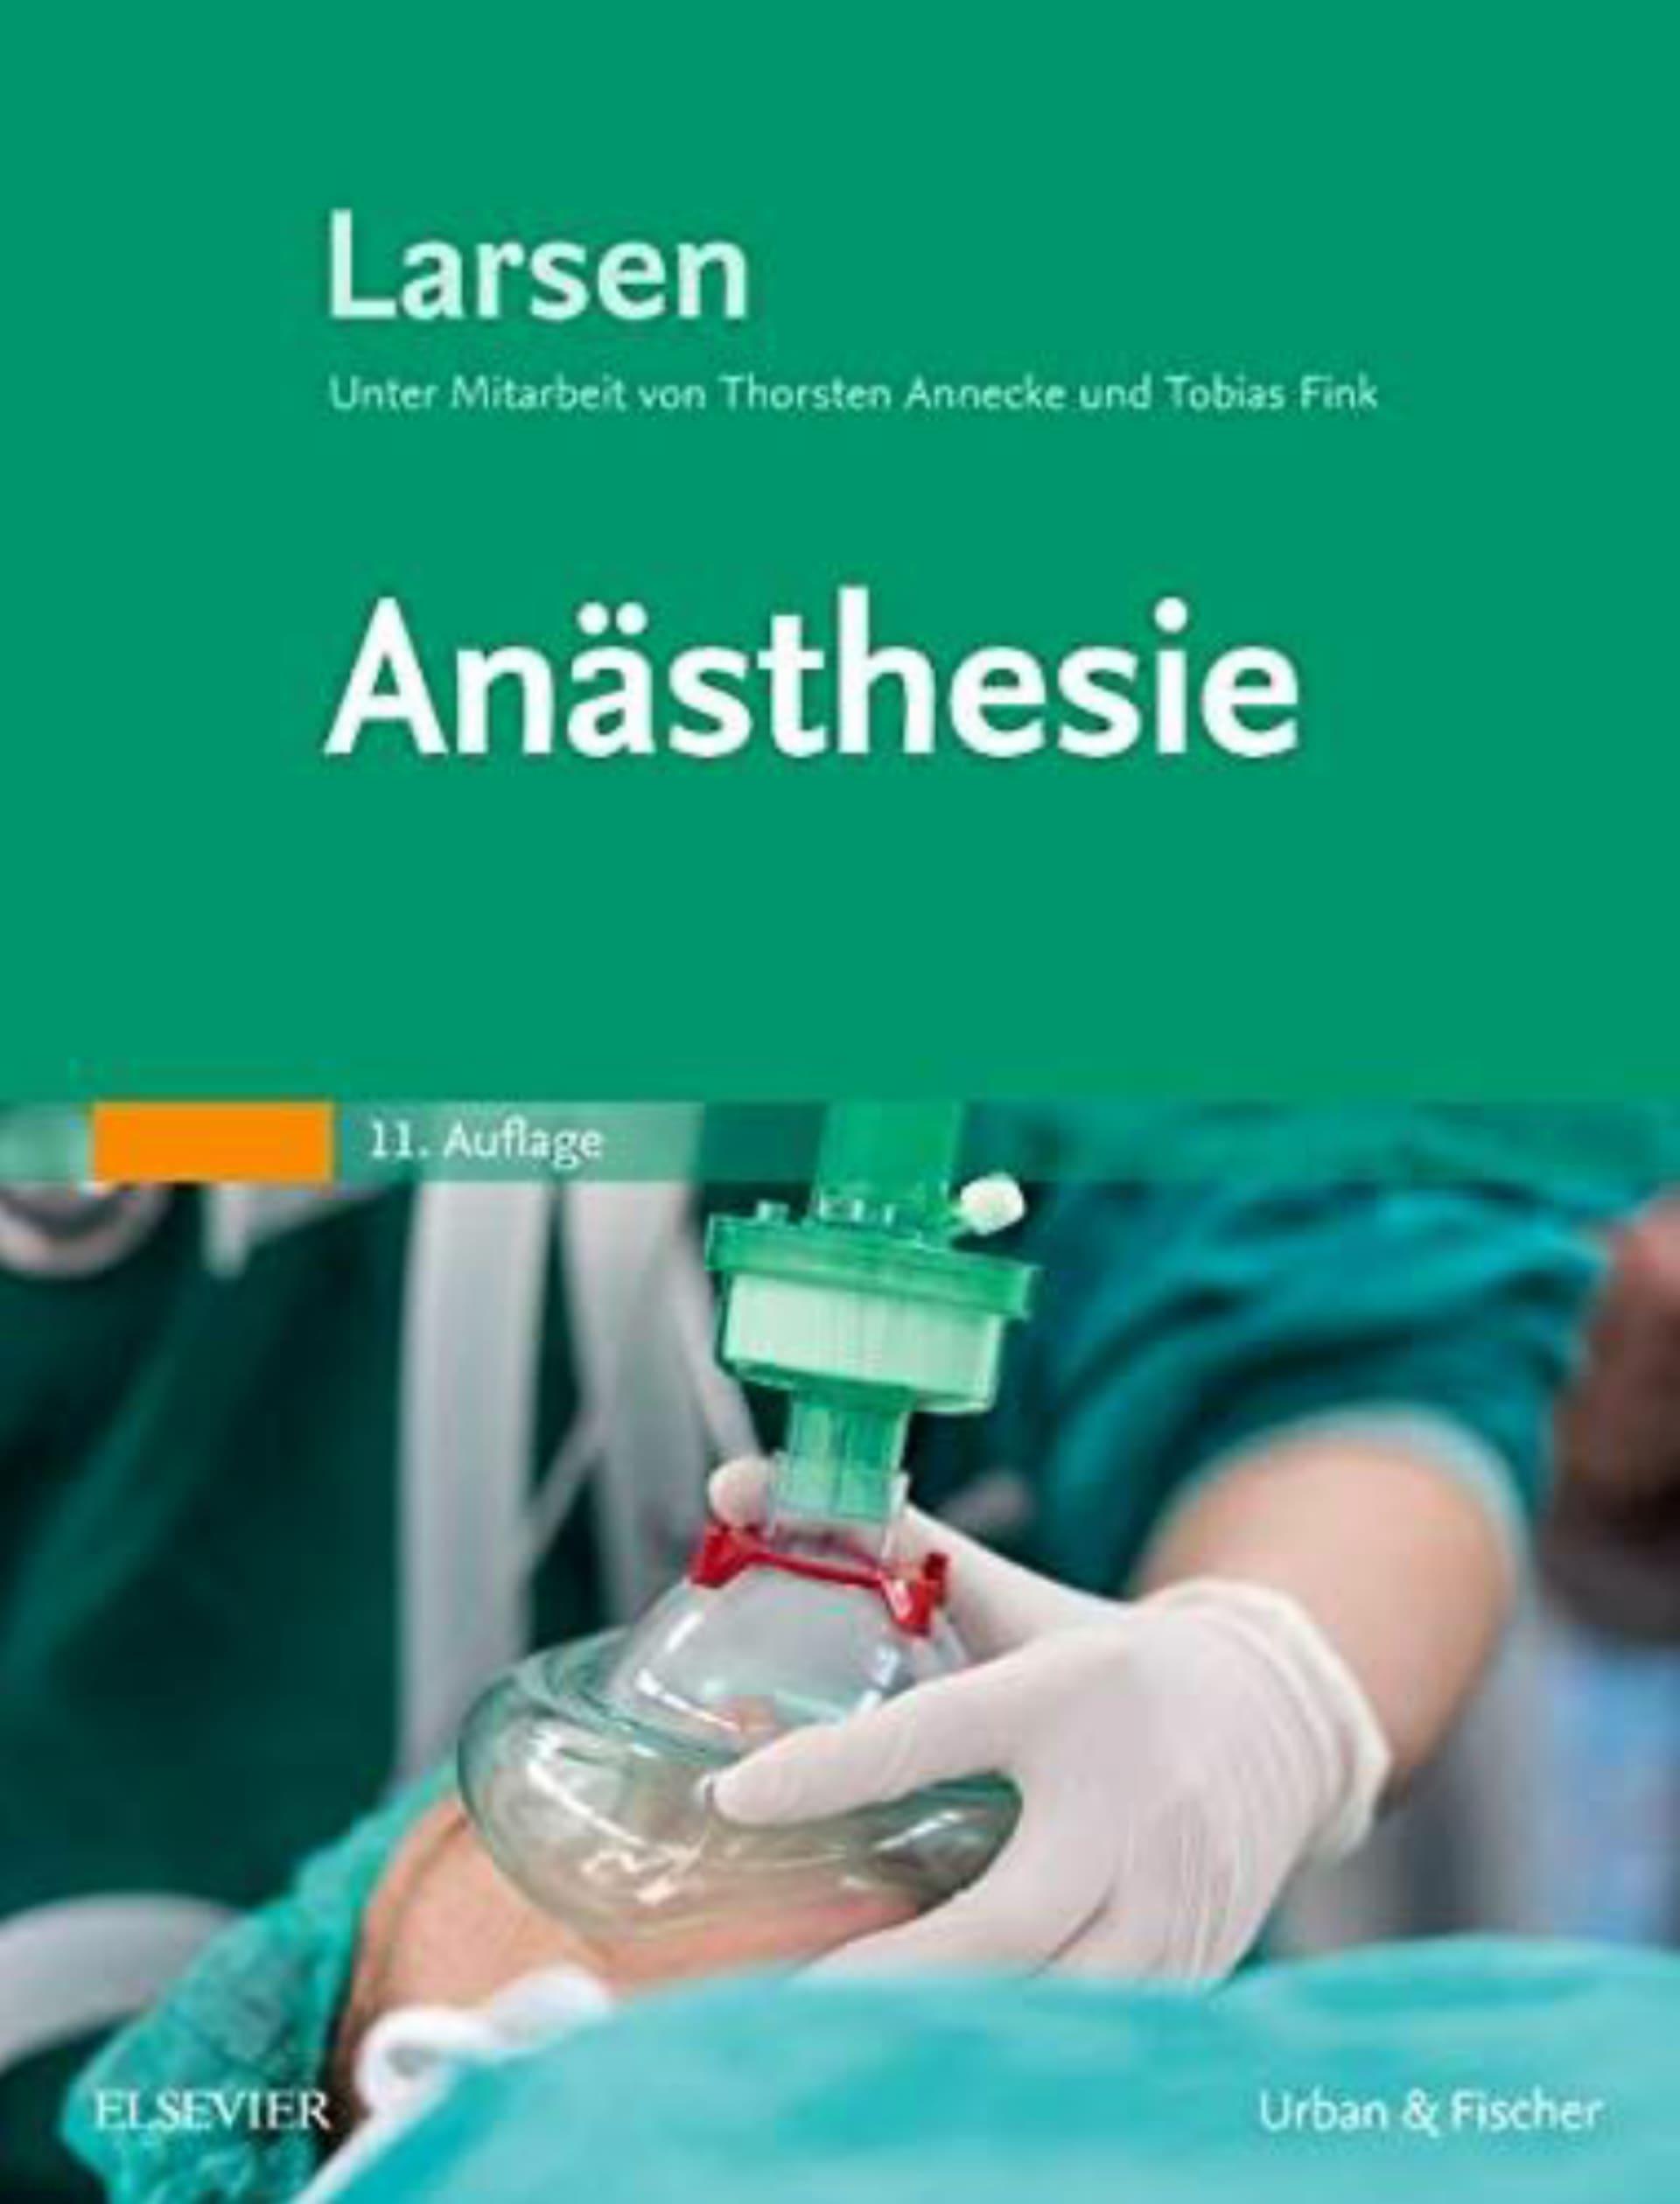 دانلود کتاب آلمانیanästhesie medizin